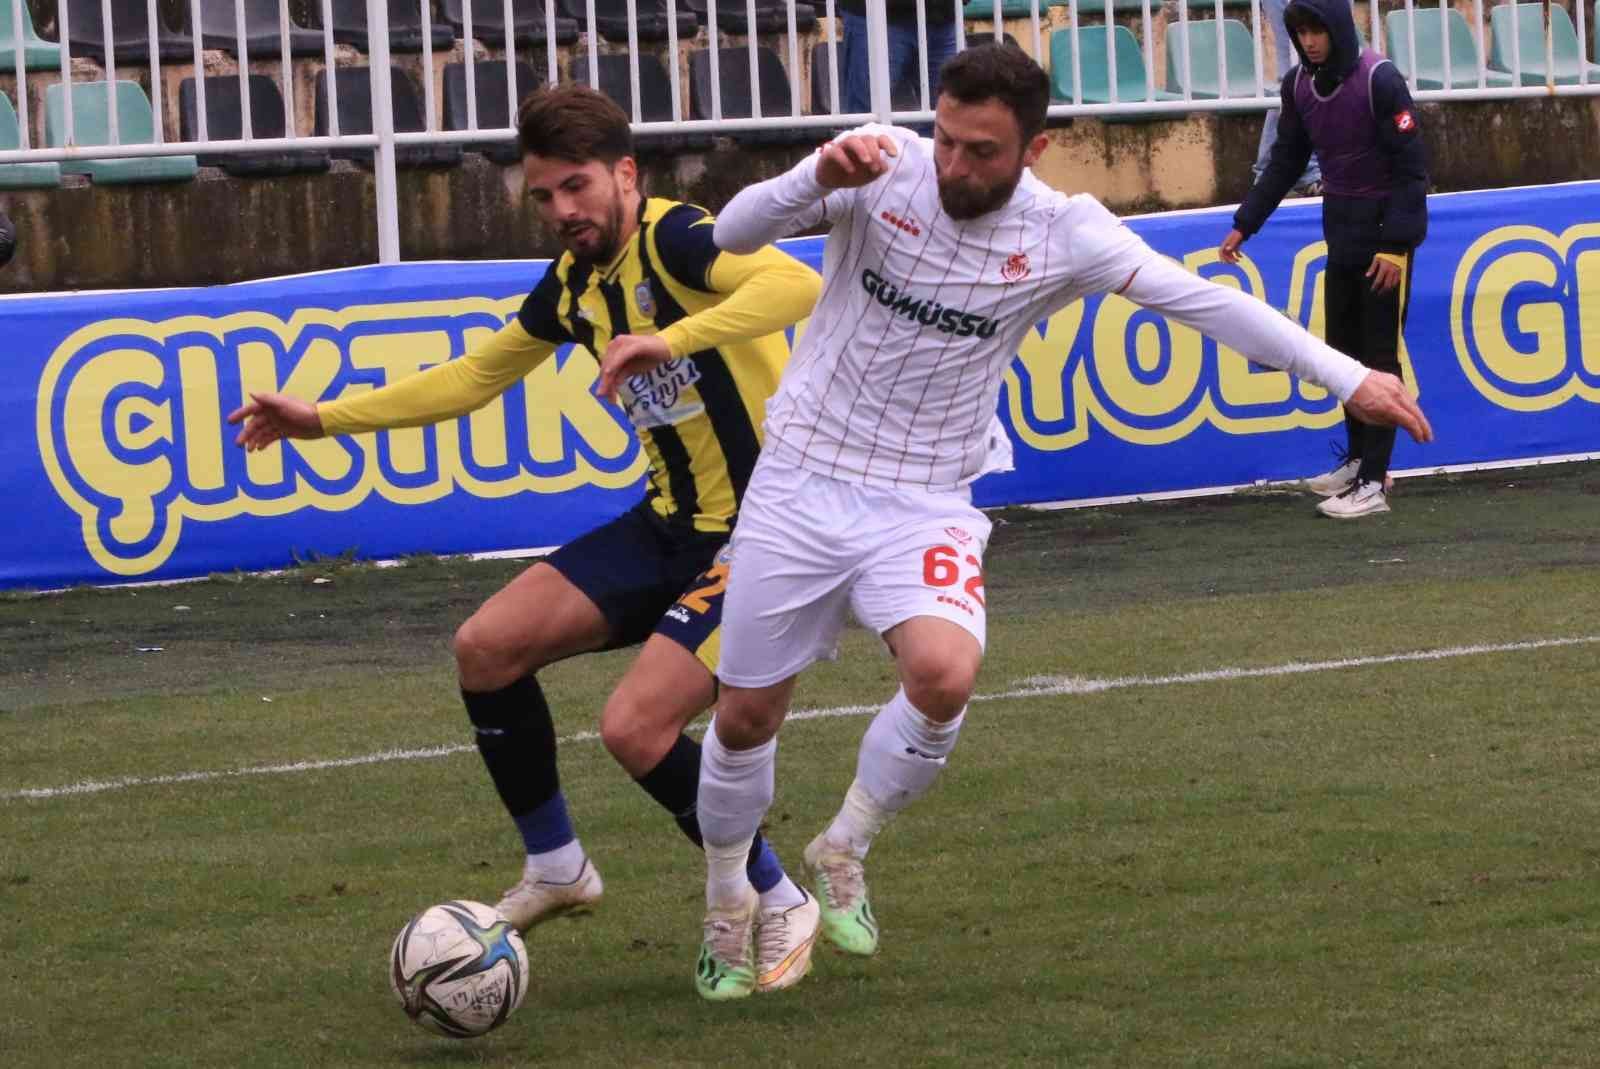 TFF 3. Lig 3. Grup’ta play-off mücadelesi veren Belediye Derincespor, 26. hafta karşılaşmasında Gümüşhane Sportif Faaliyetler’i 3-0 mağlup etti ...